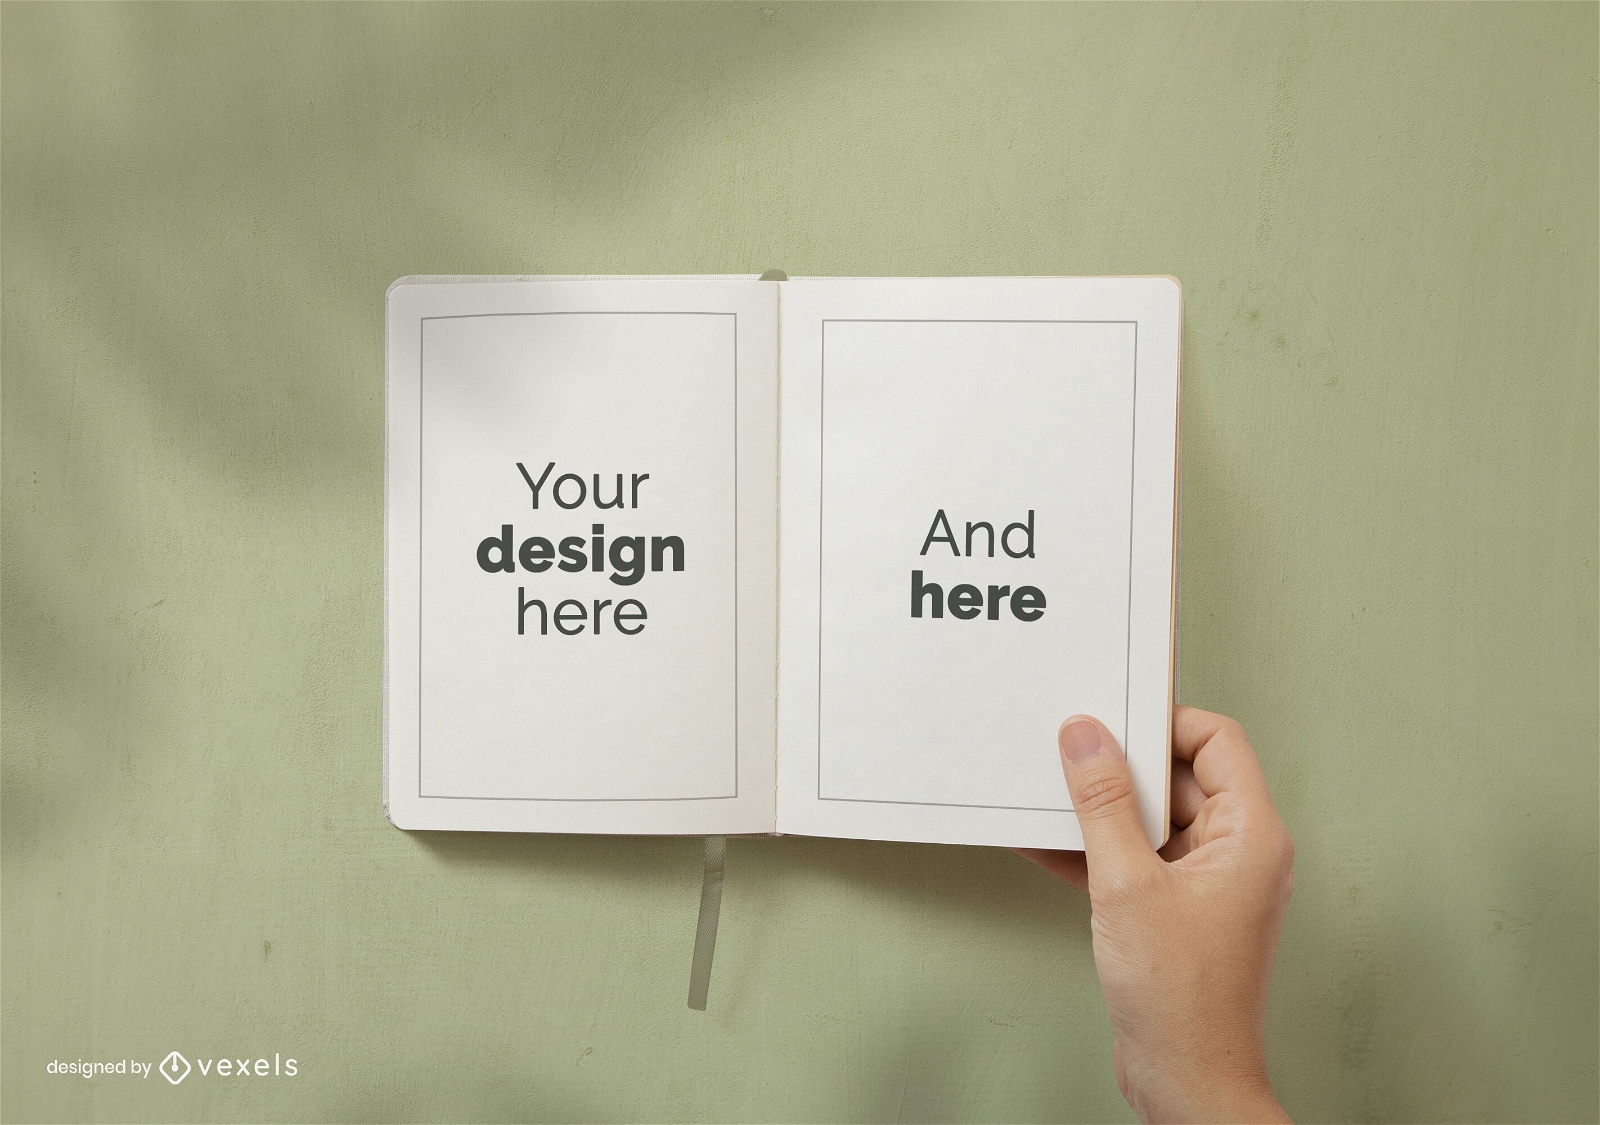 Diseño de maqueta de páginas de cuaderno